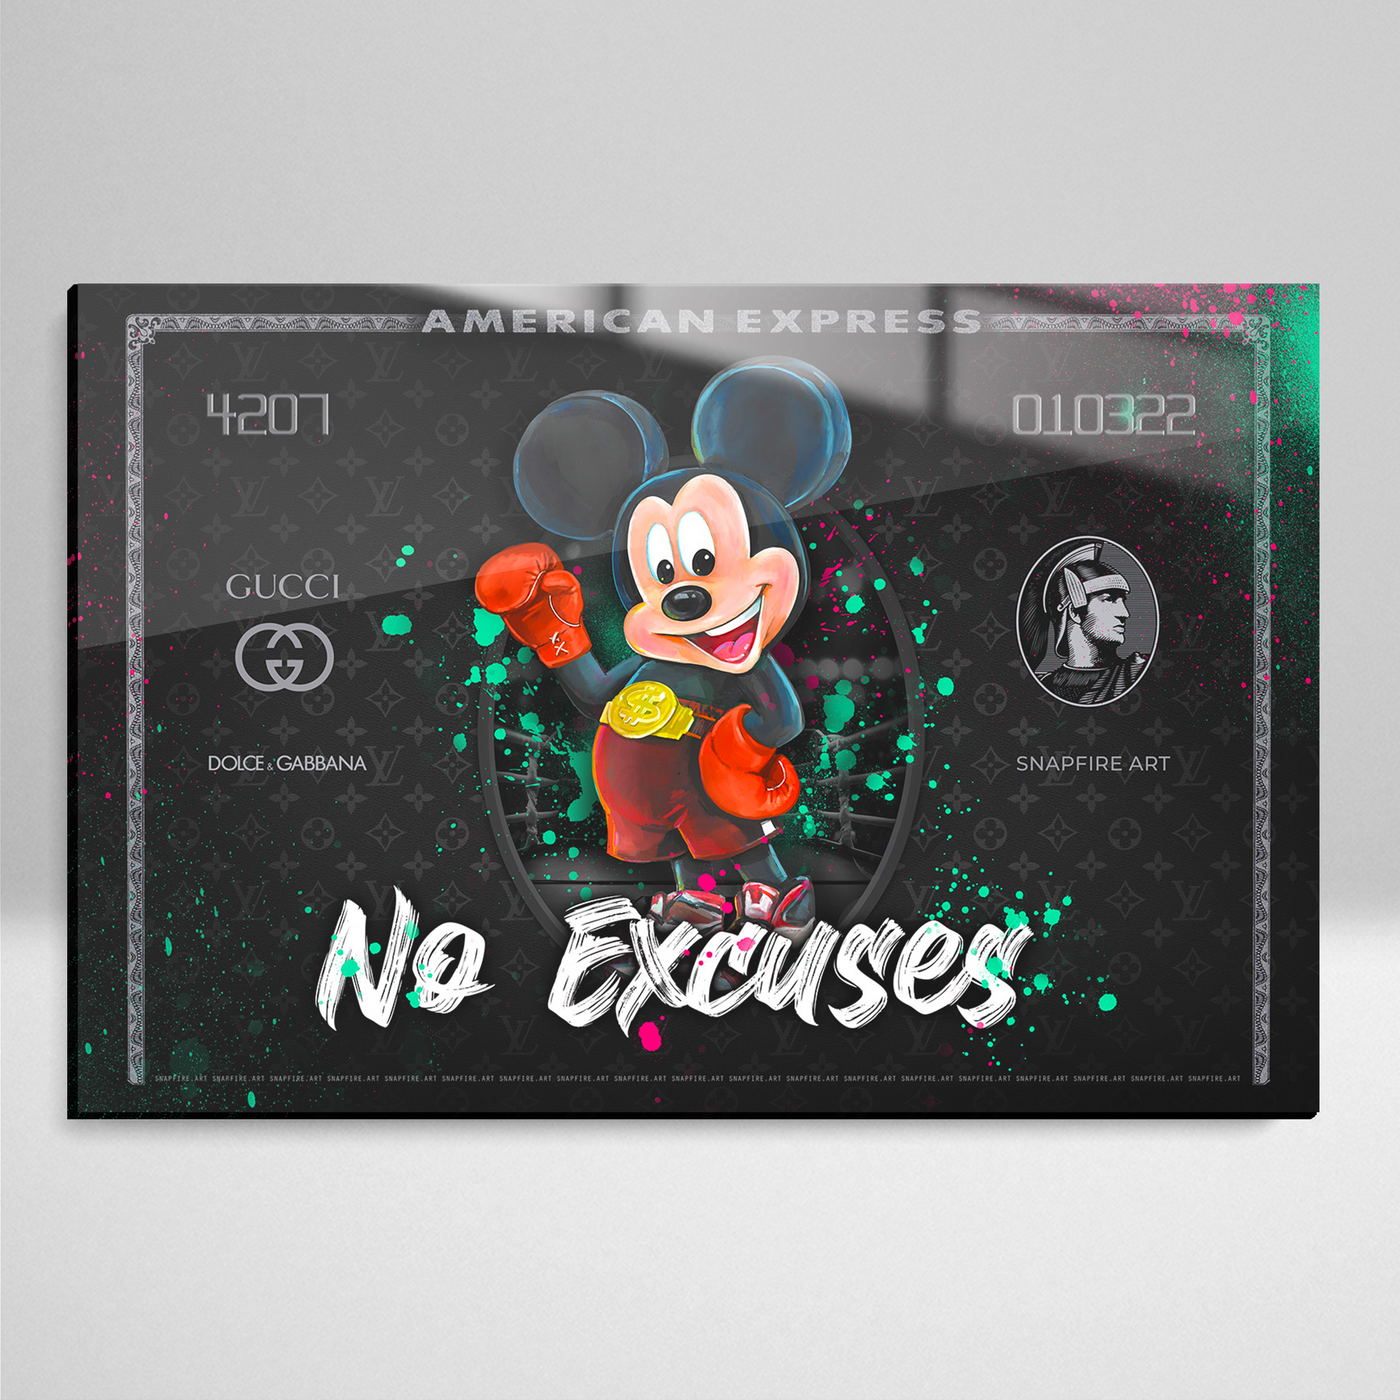 Black Cash - No Excuses Boxer Mouse